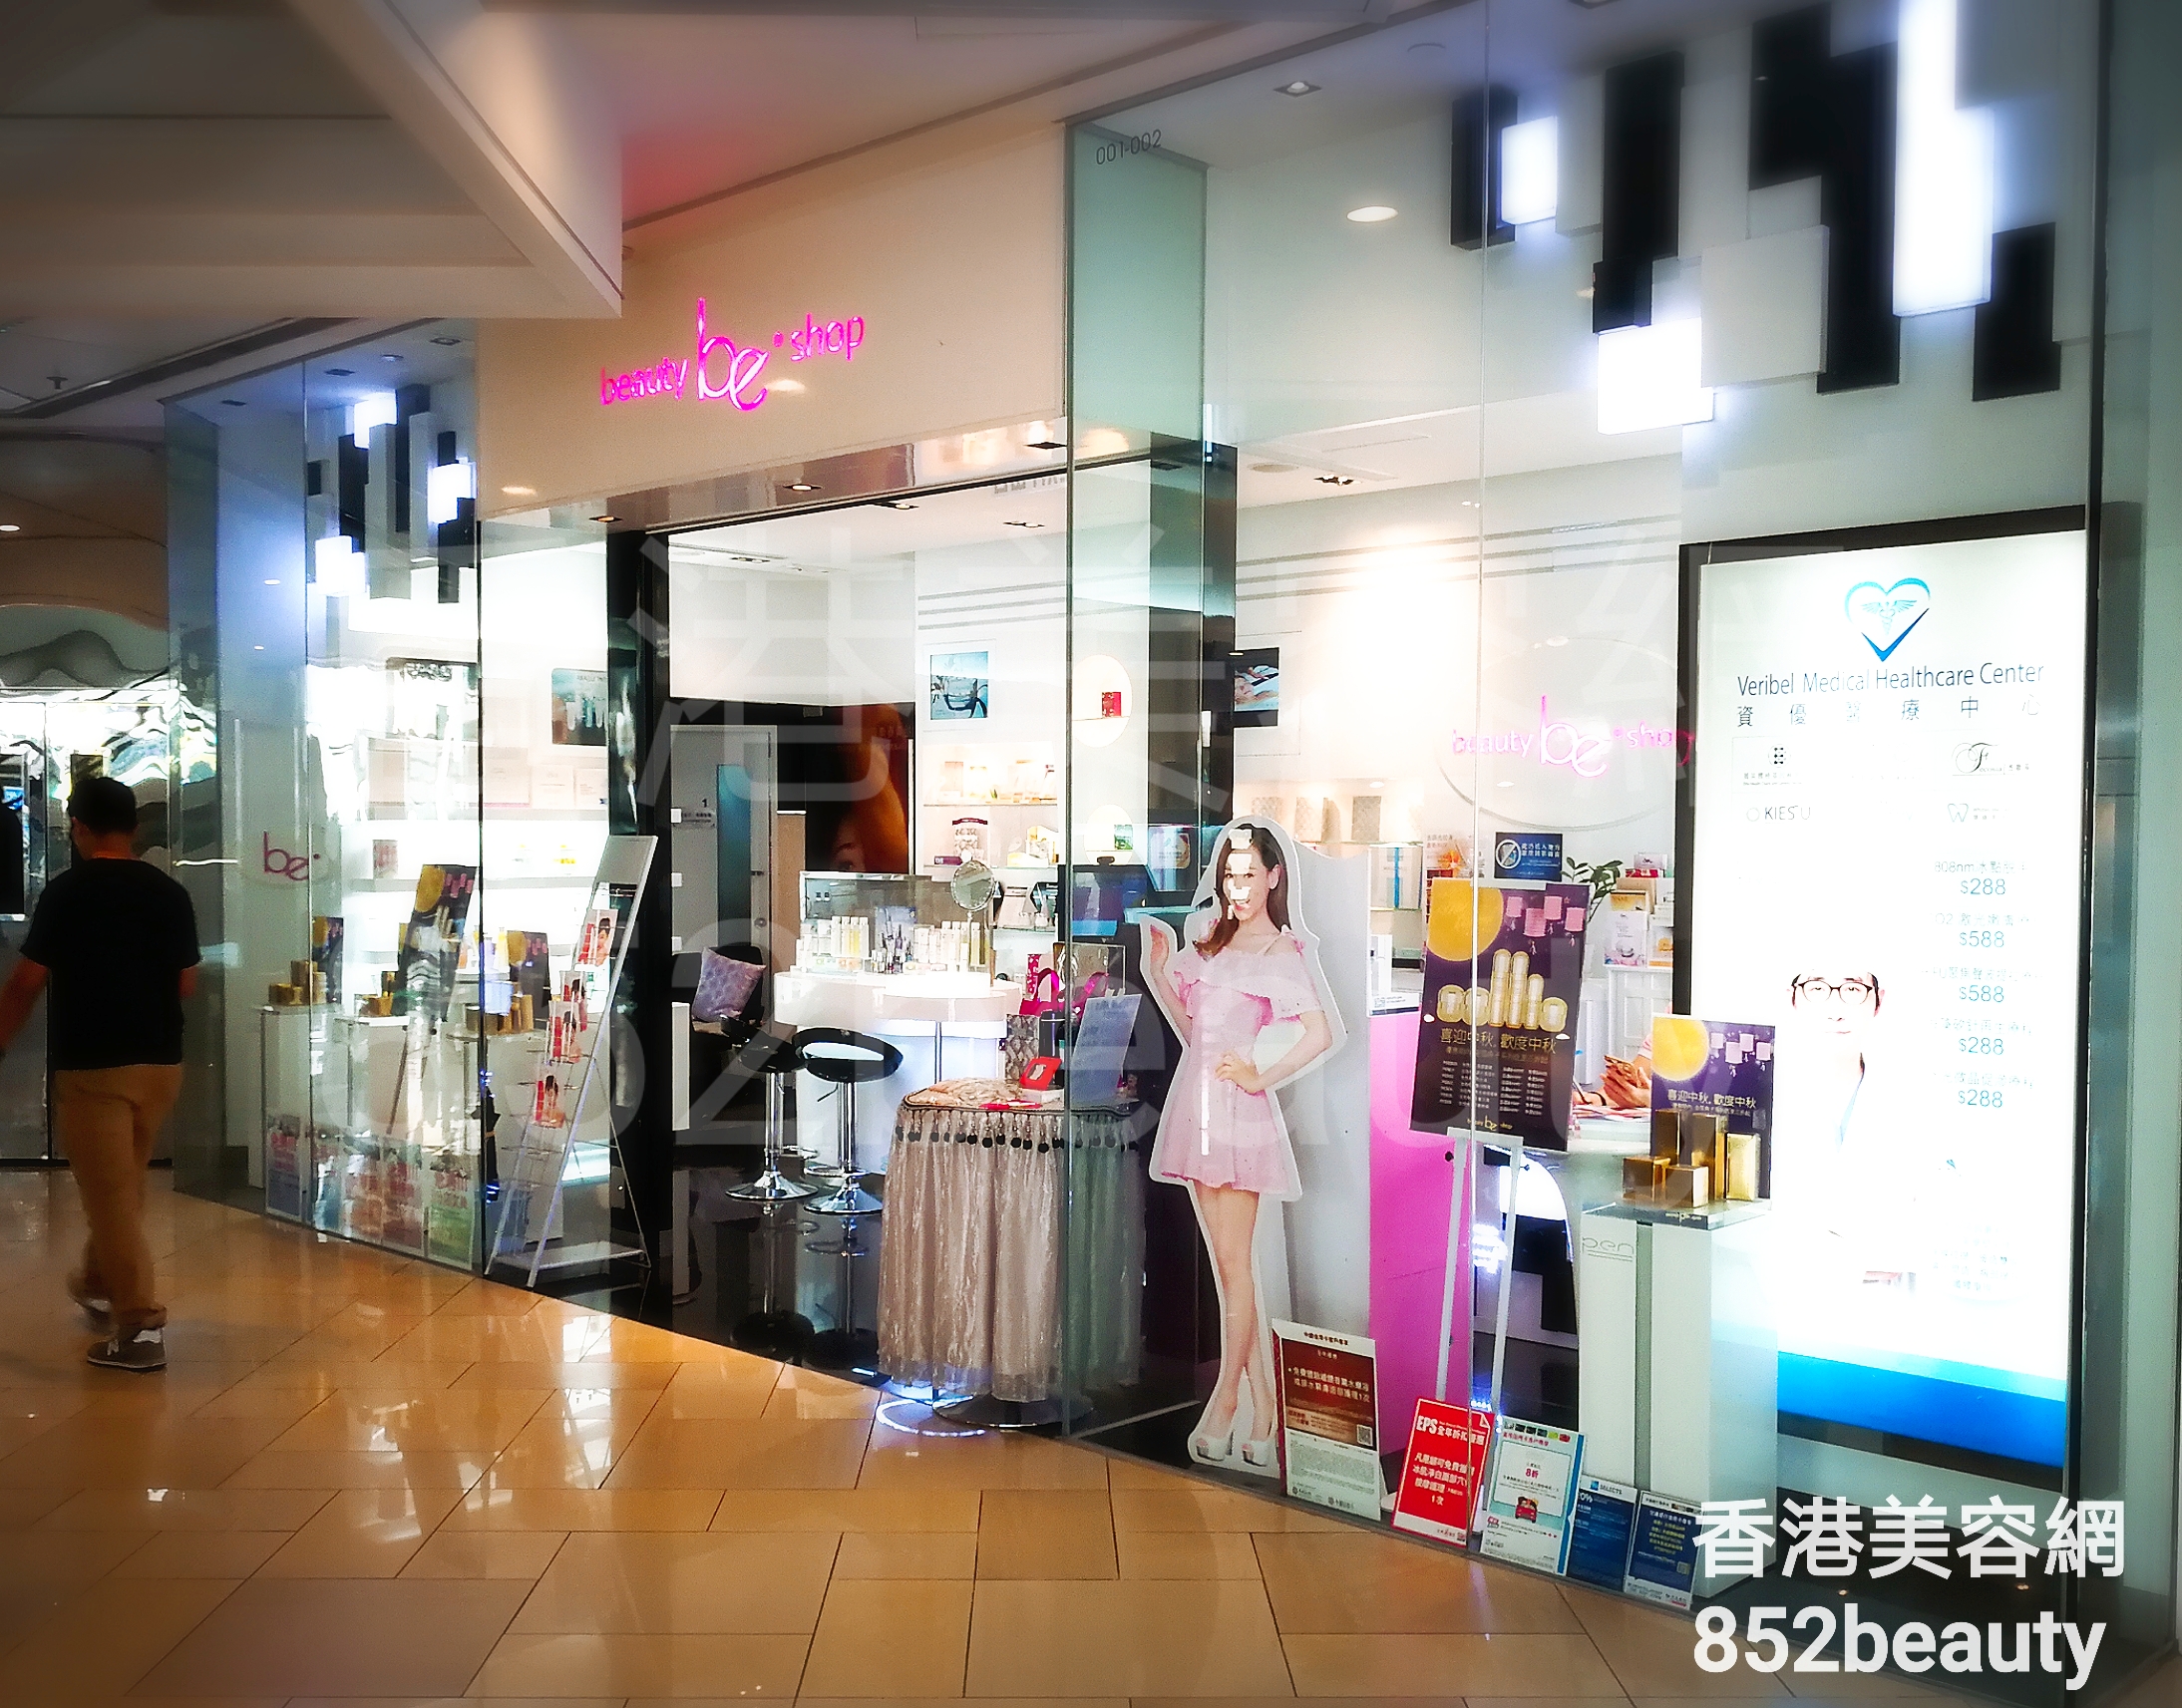 纤体瘦身: be beauty shop (港運城)